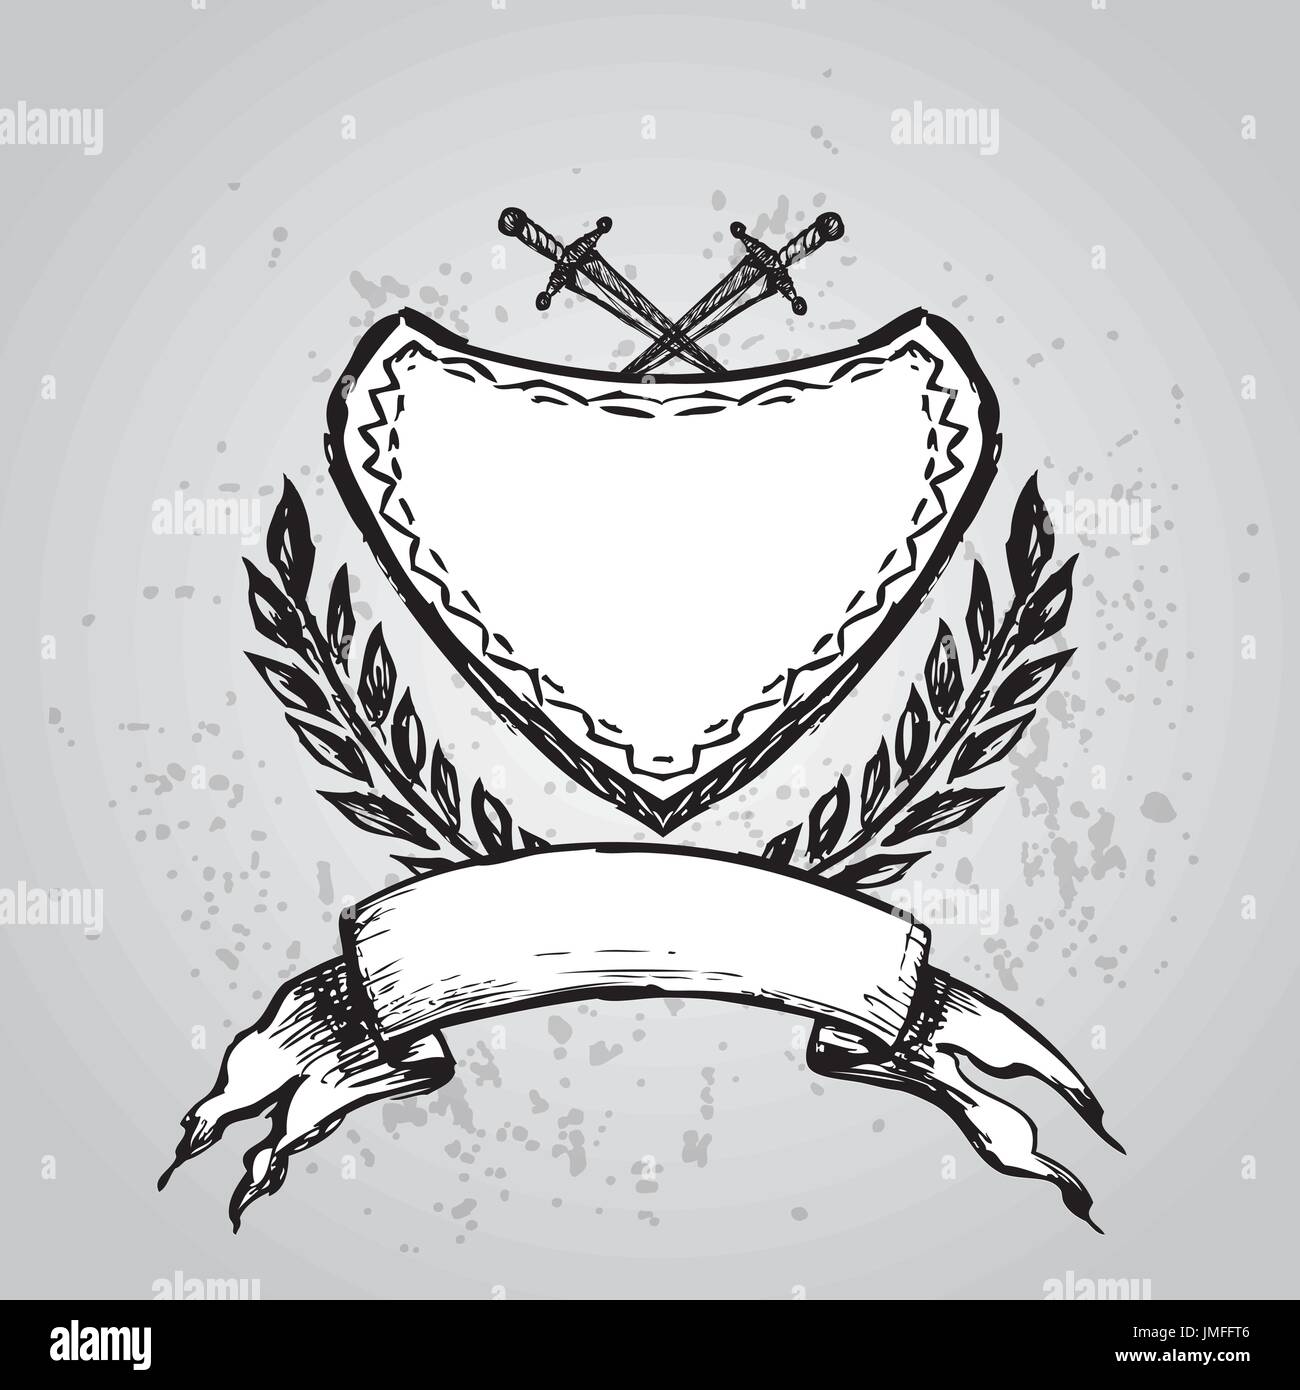 Tatouage ou de l'emblème des motards,logo , hand drawn design. vector illustration Illustration de Vecteur